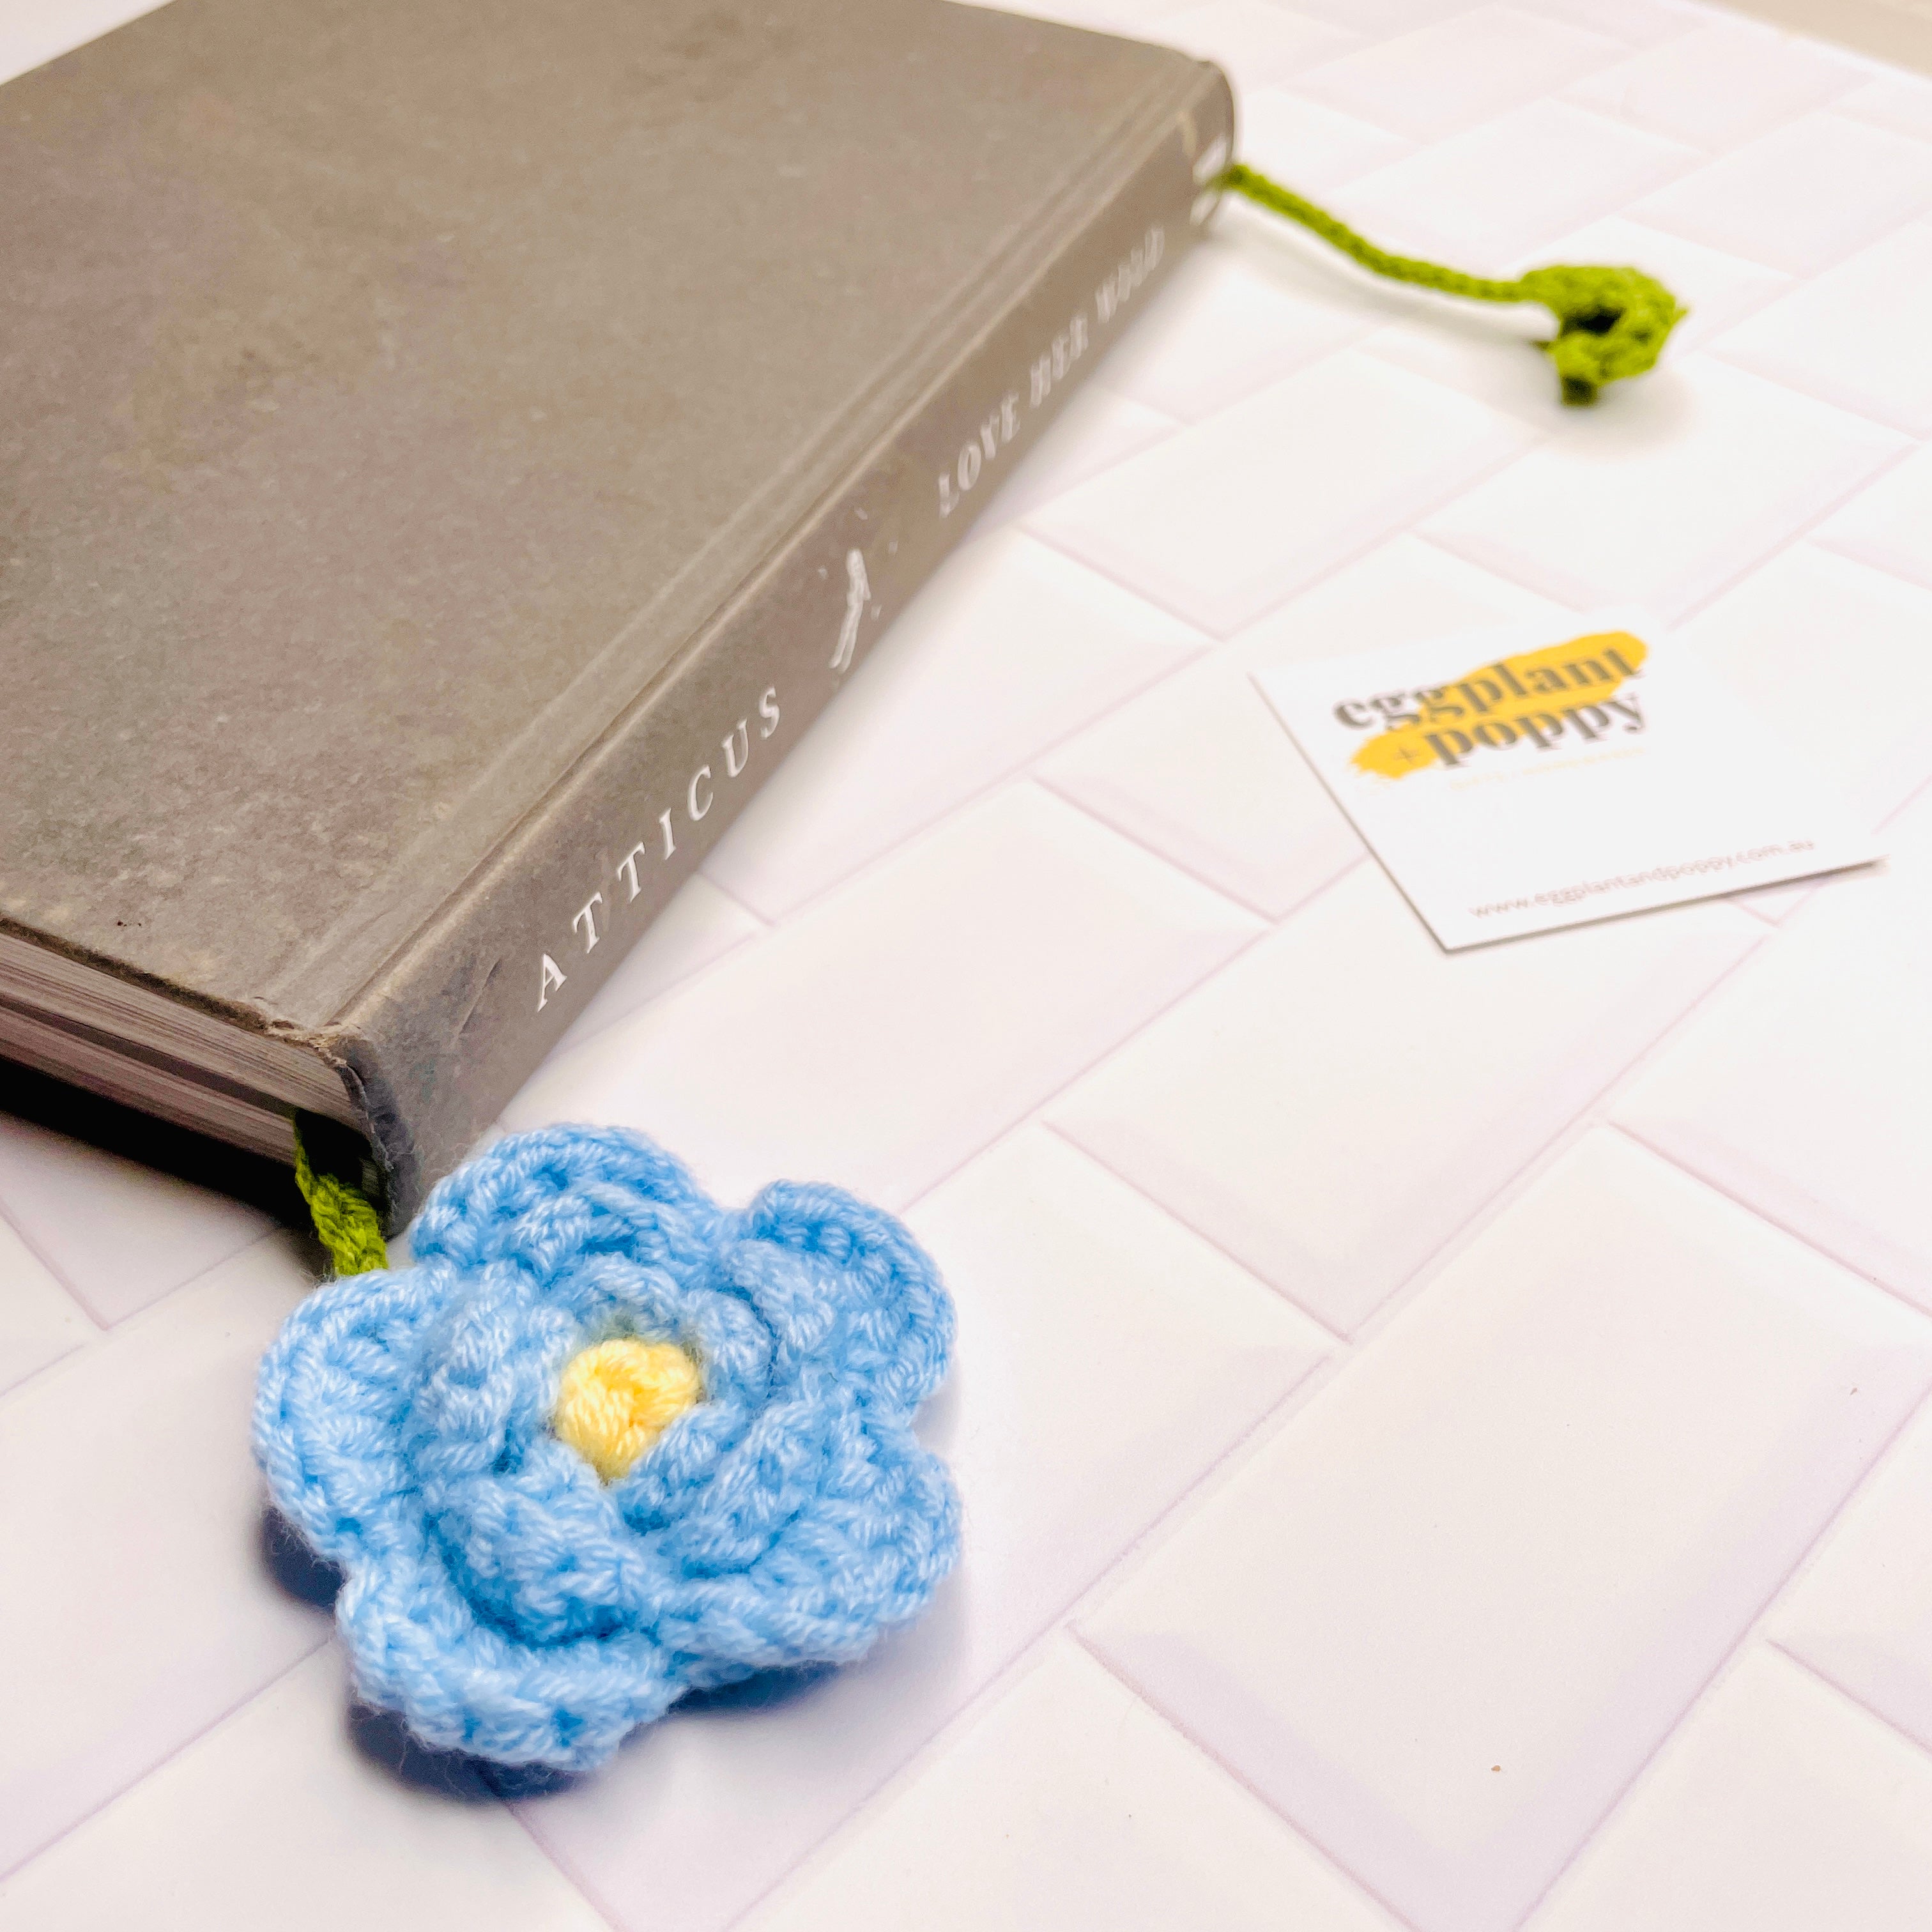 Crochet Bookmark - Red Toadstool